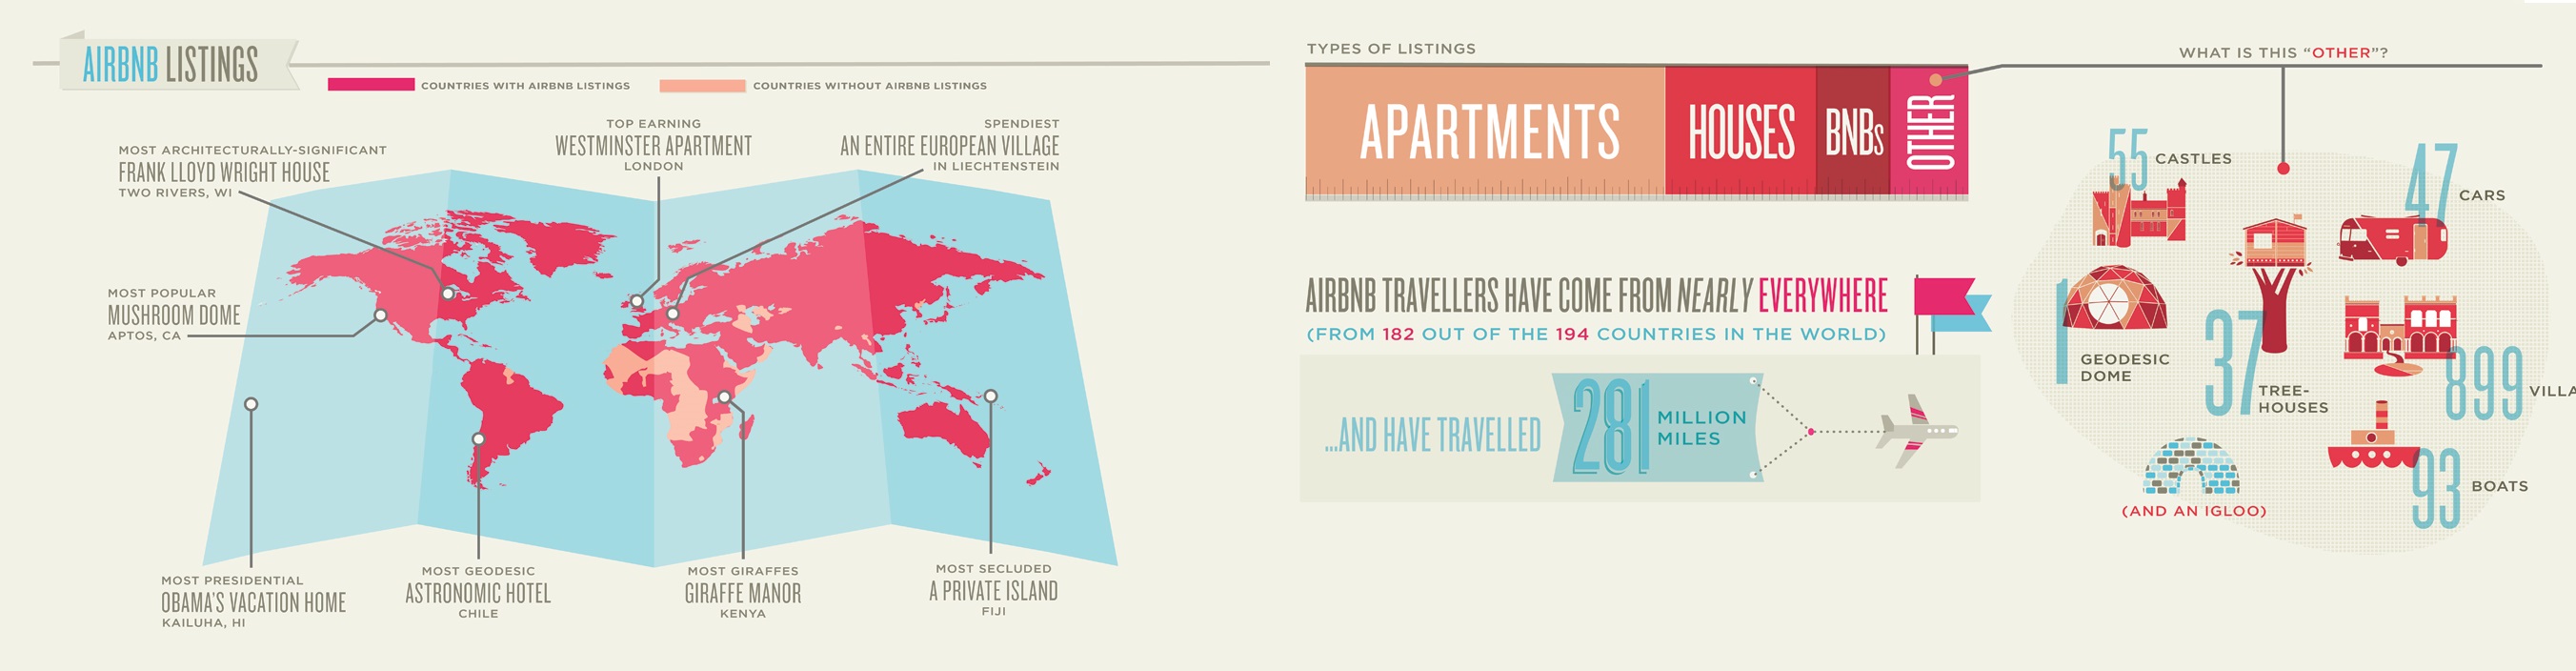 airbnb infographic tweede boodschap